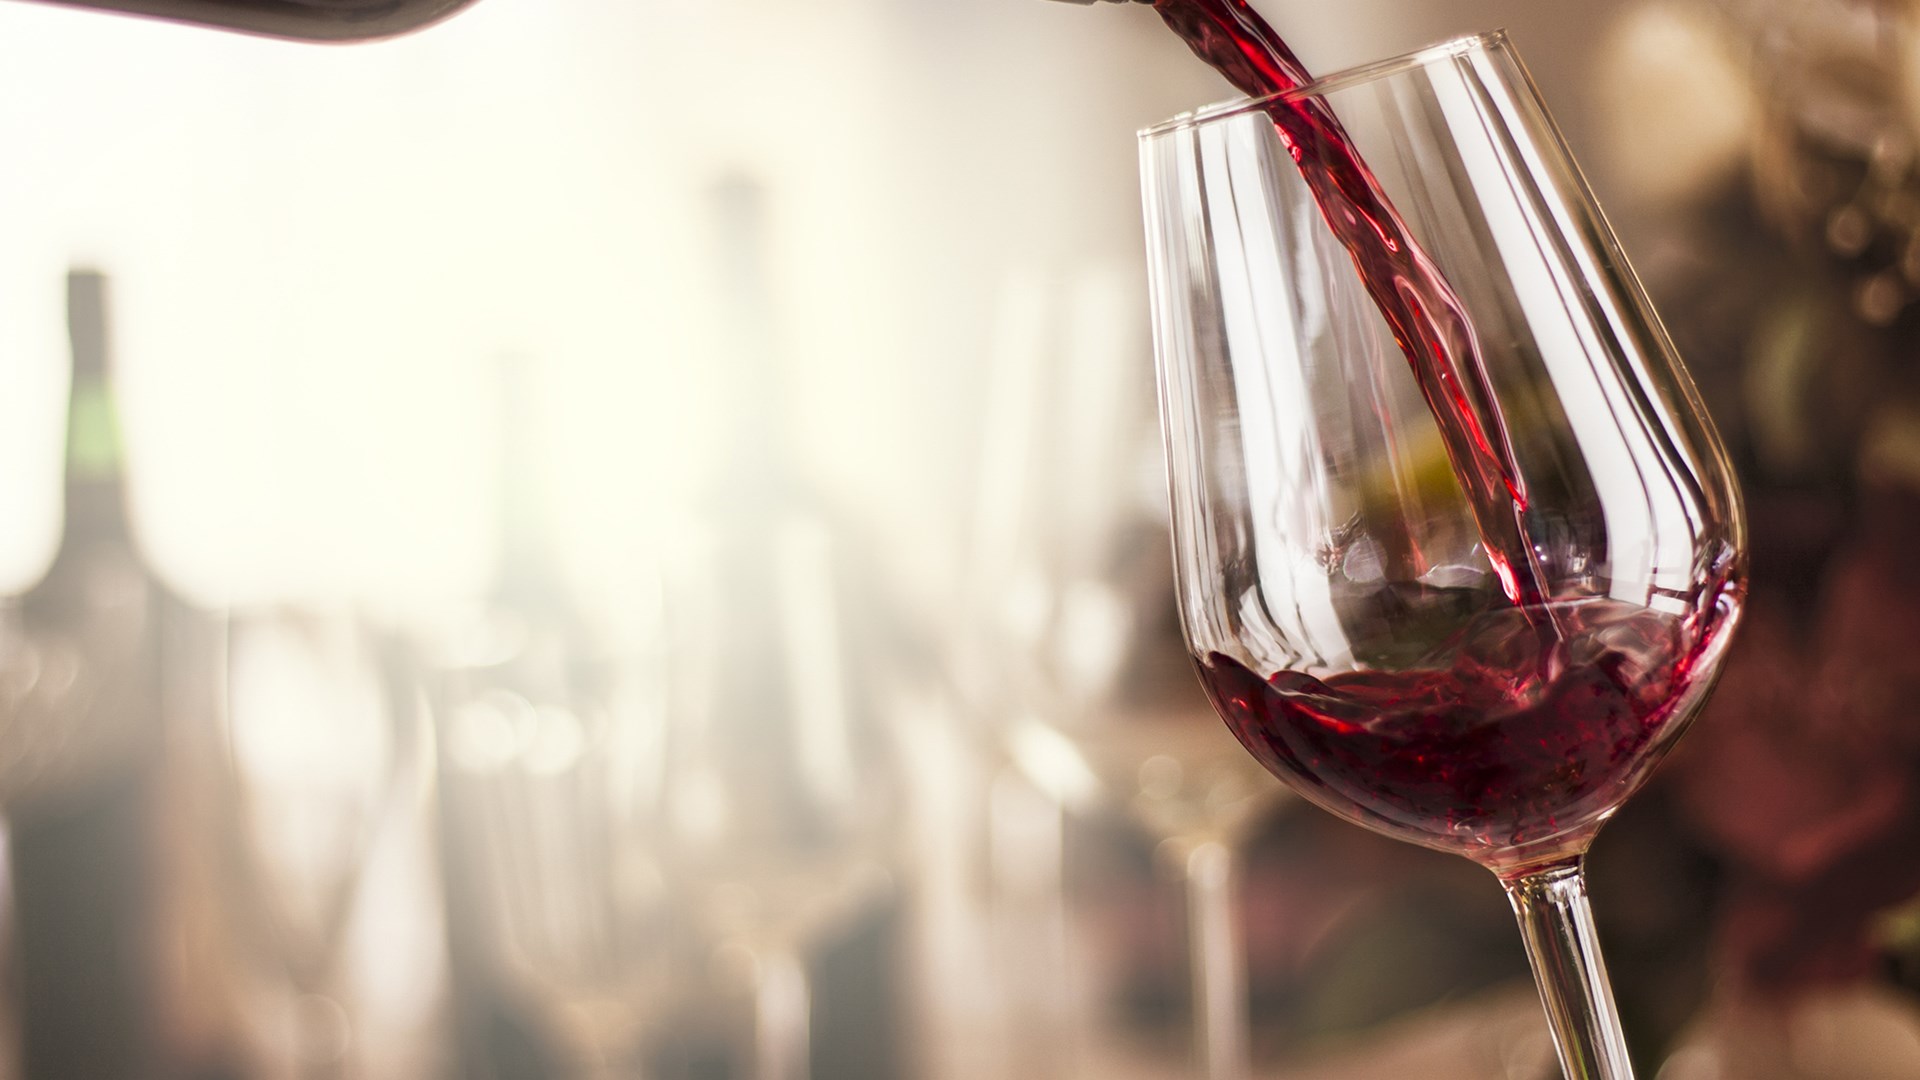 Αποκάλυψη-σοκ στον Realfm 97,8 για νοθευμένο κρασί στην ελληνική αγορά